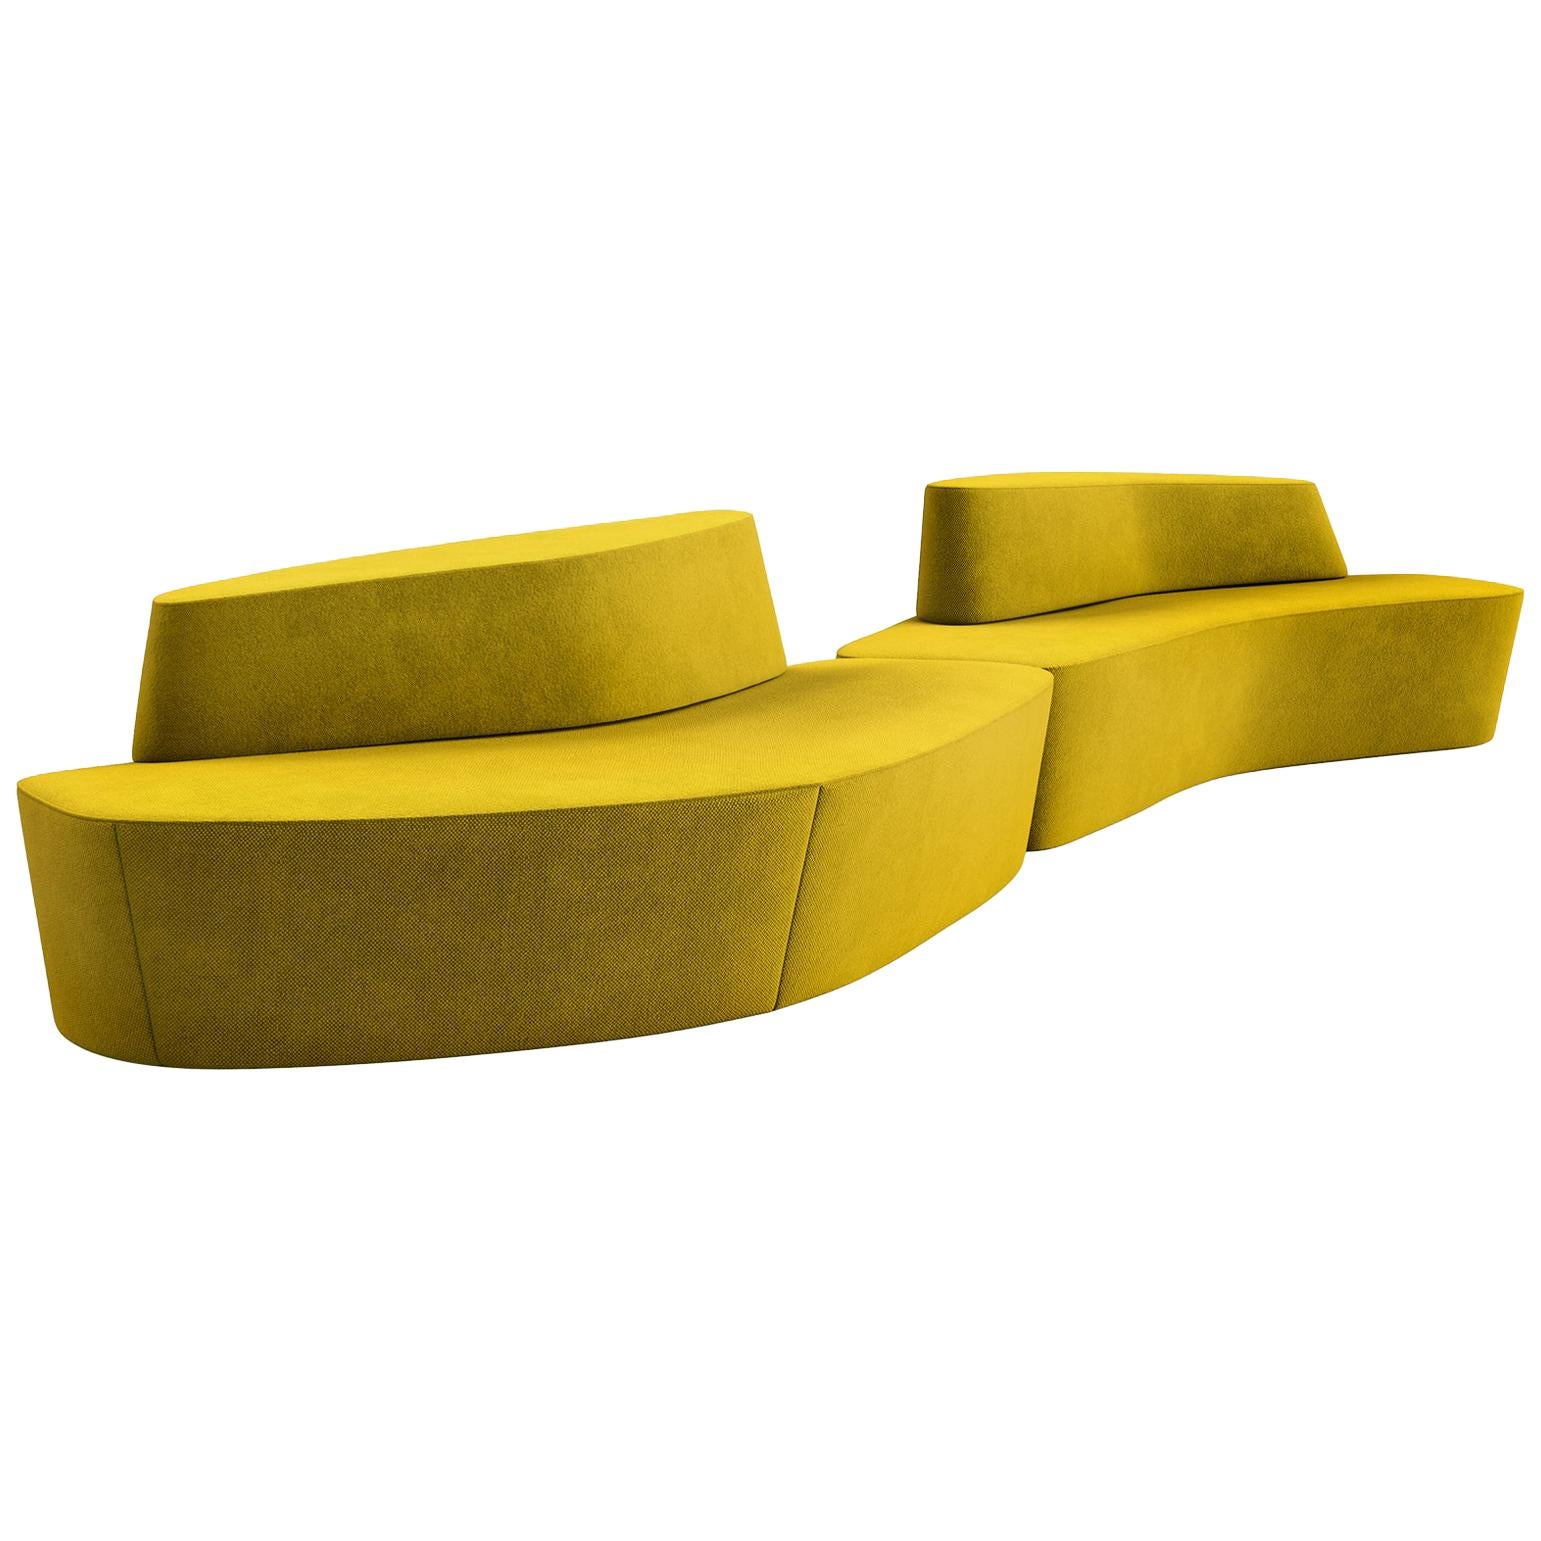 Tacchini Polar Modular Sofa System in Yellow Bryony Fabric by Pearson Lloyd